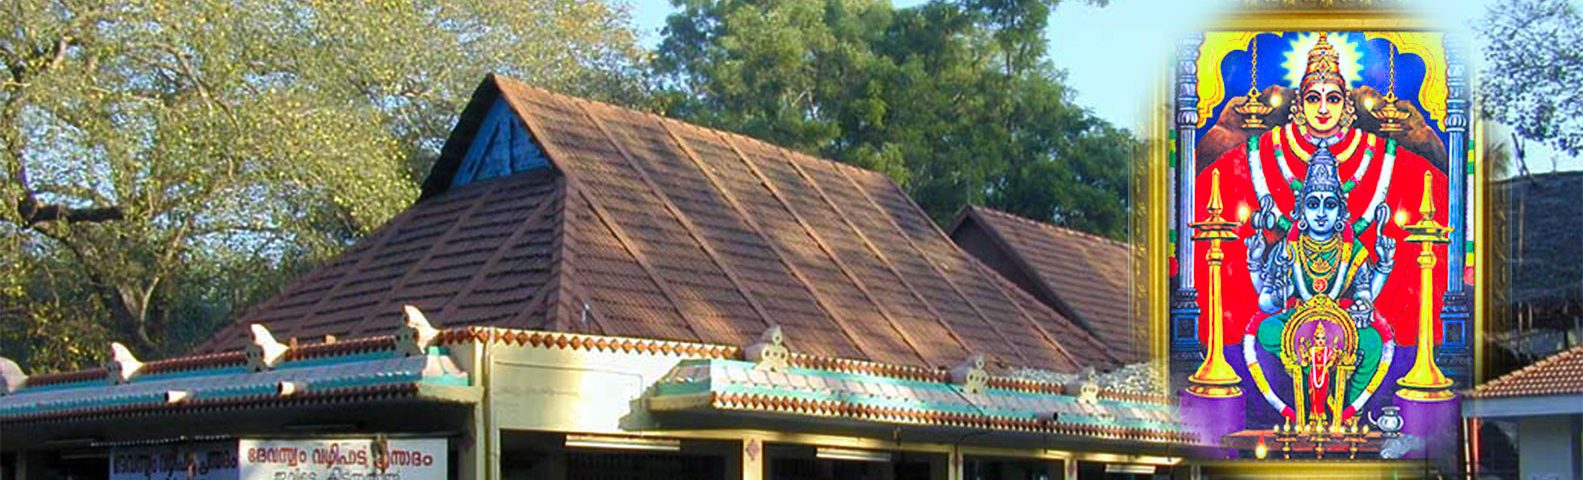 tmpooja-mandaikadu-amman-temple-online-mega-pooja-store7jpg